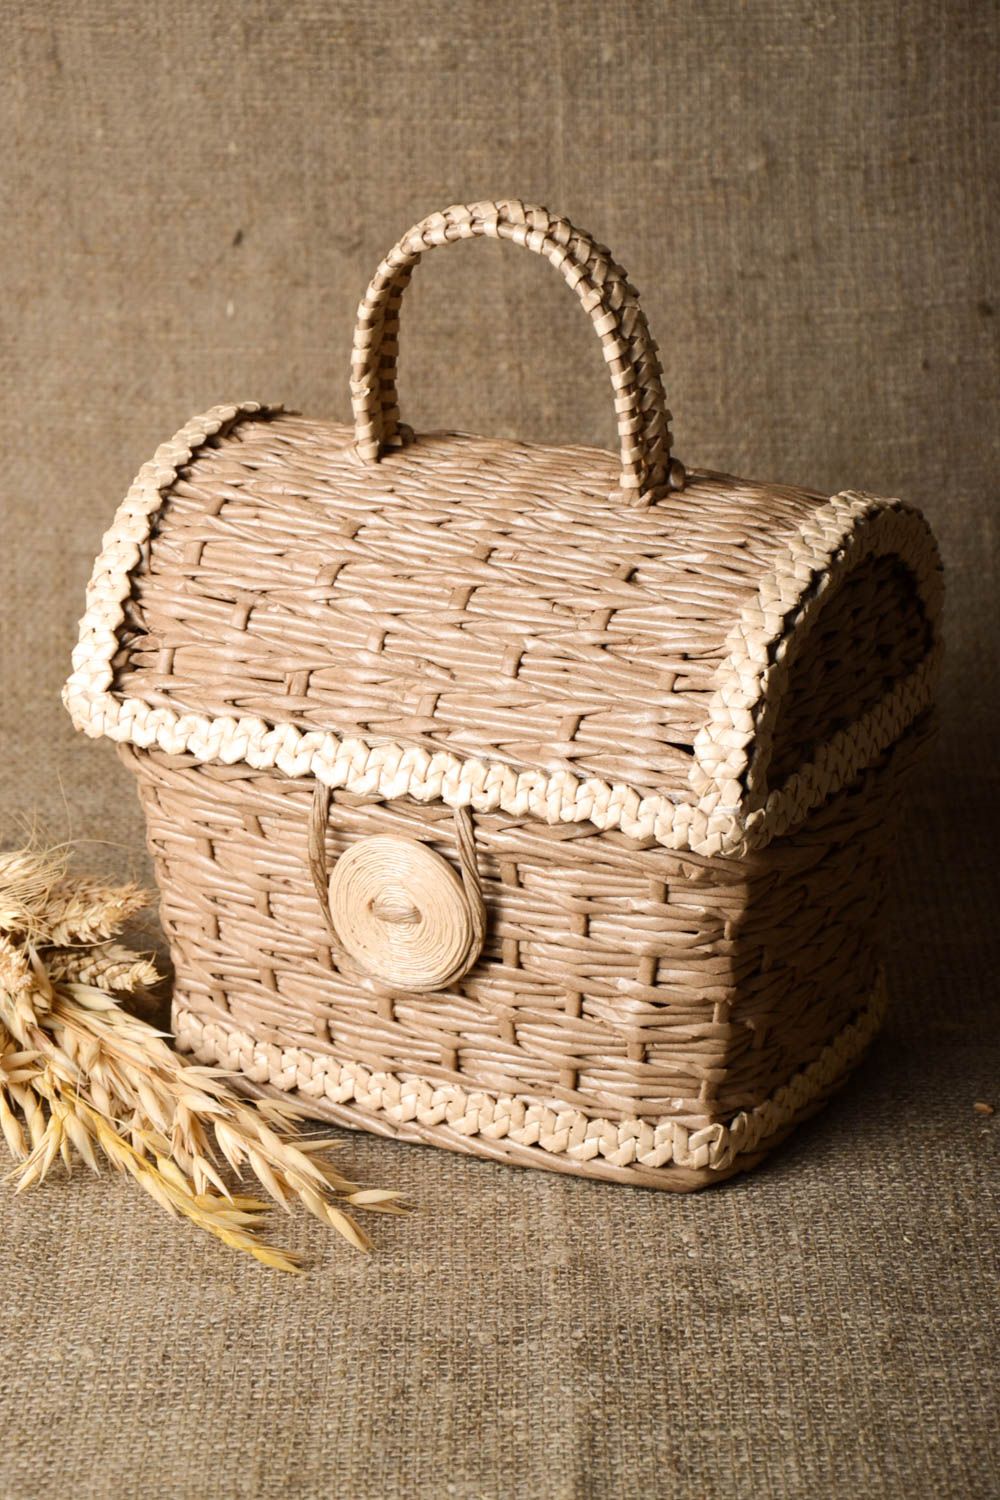 Handmade wicker basket wicker breadbox home decor ideas kitchen utensils photo 1